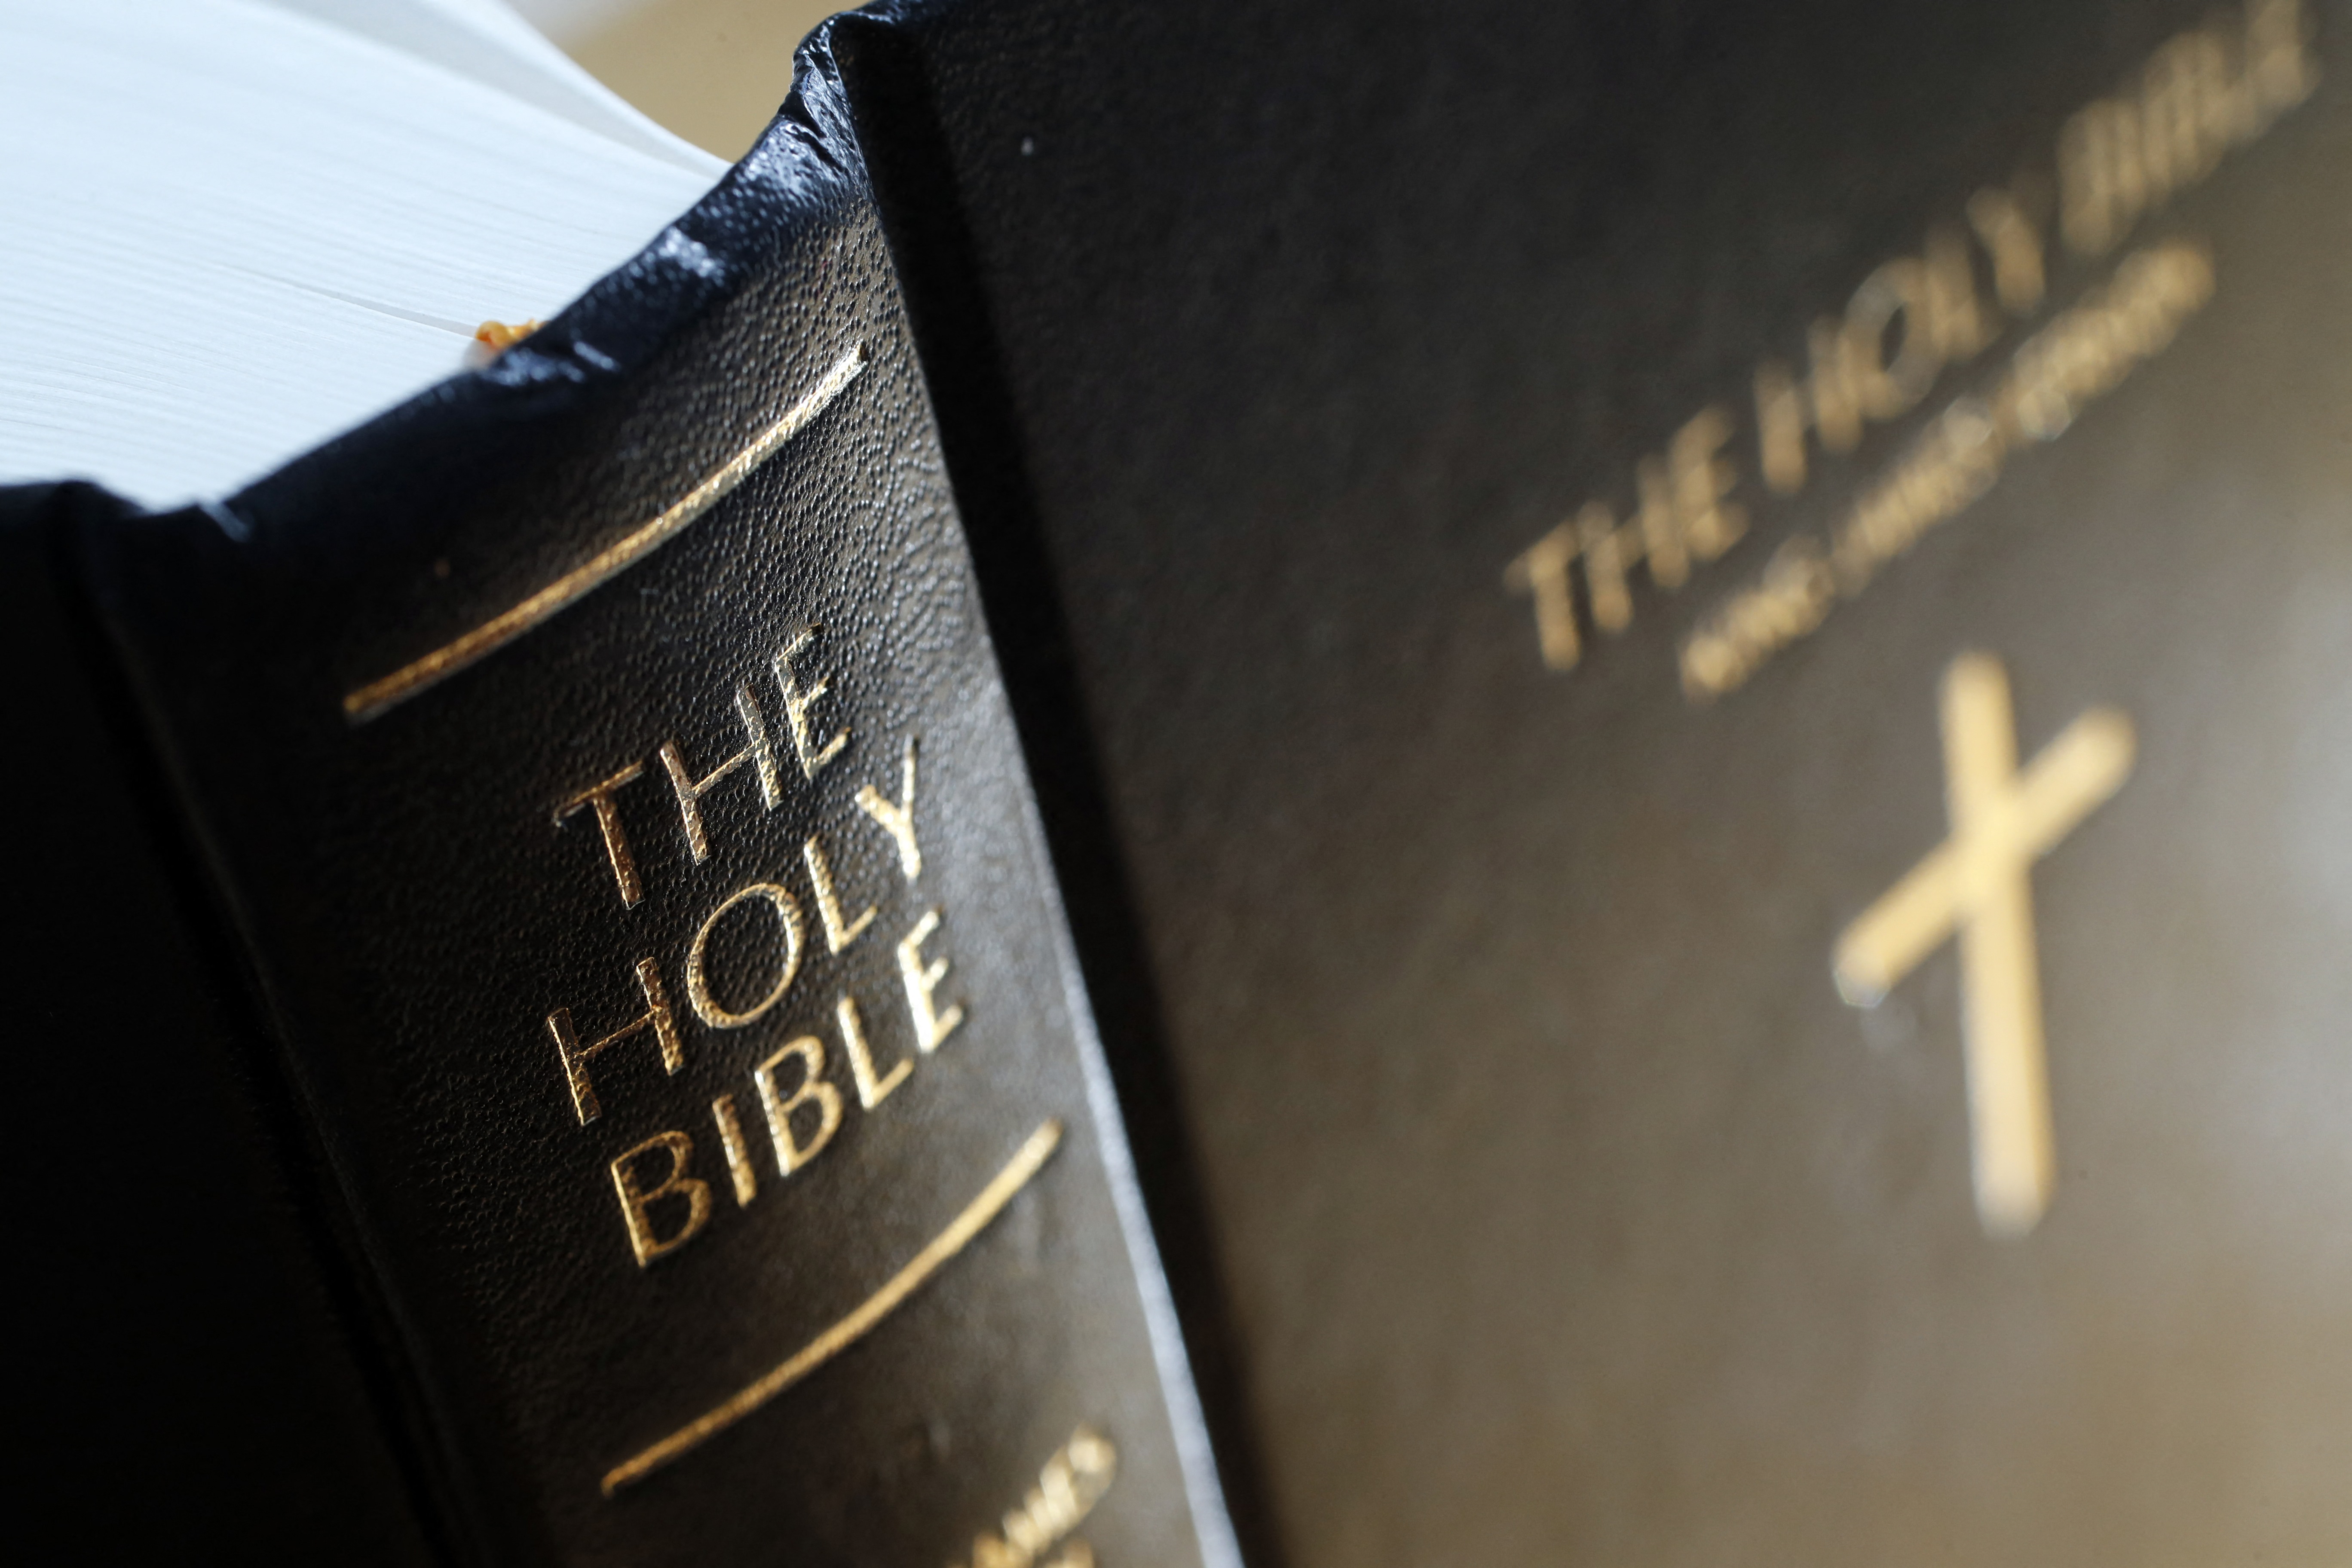 Egy floridai férfi be szeretné tiltatni a Bibliát az iskolákban, mondván, az nem gyerekeknek való